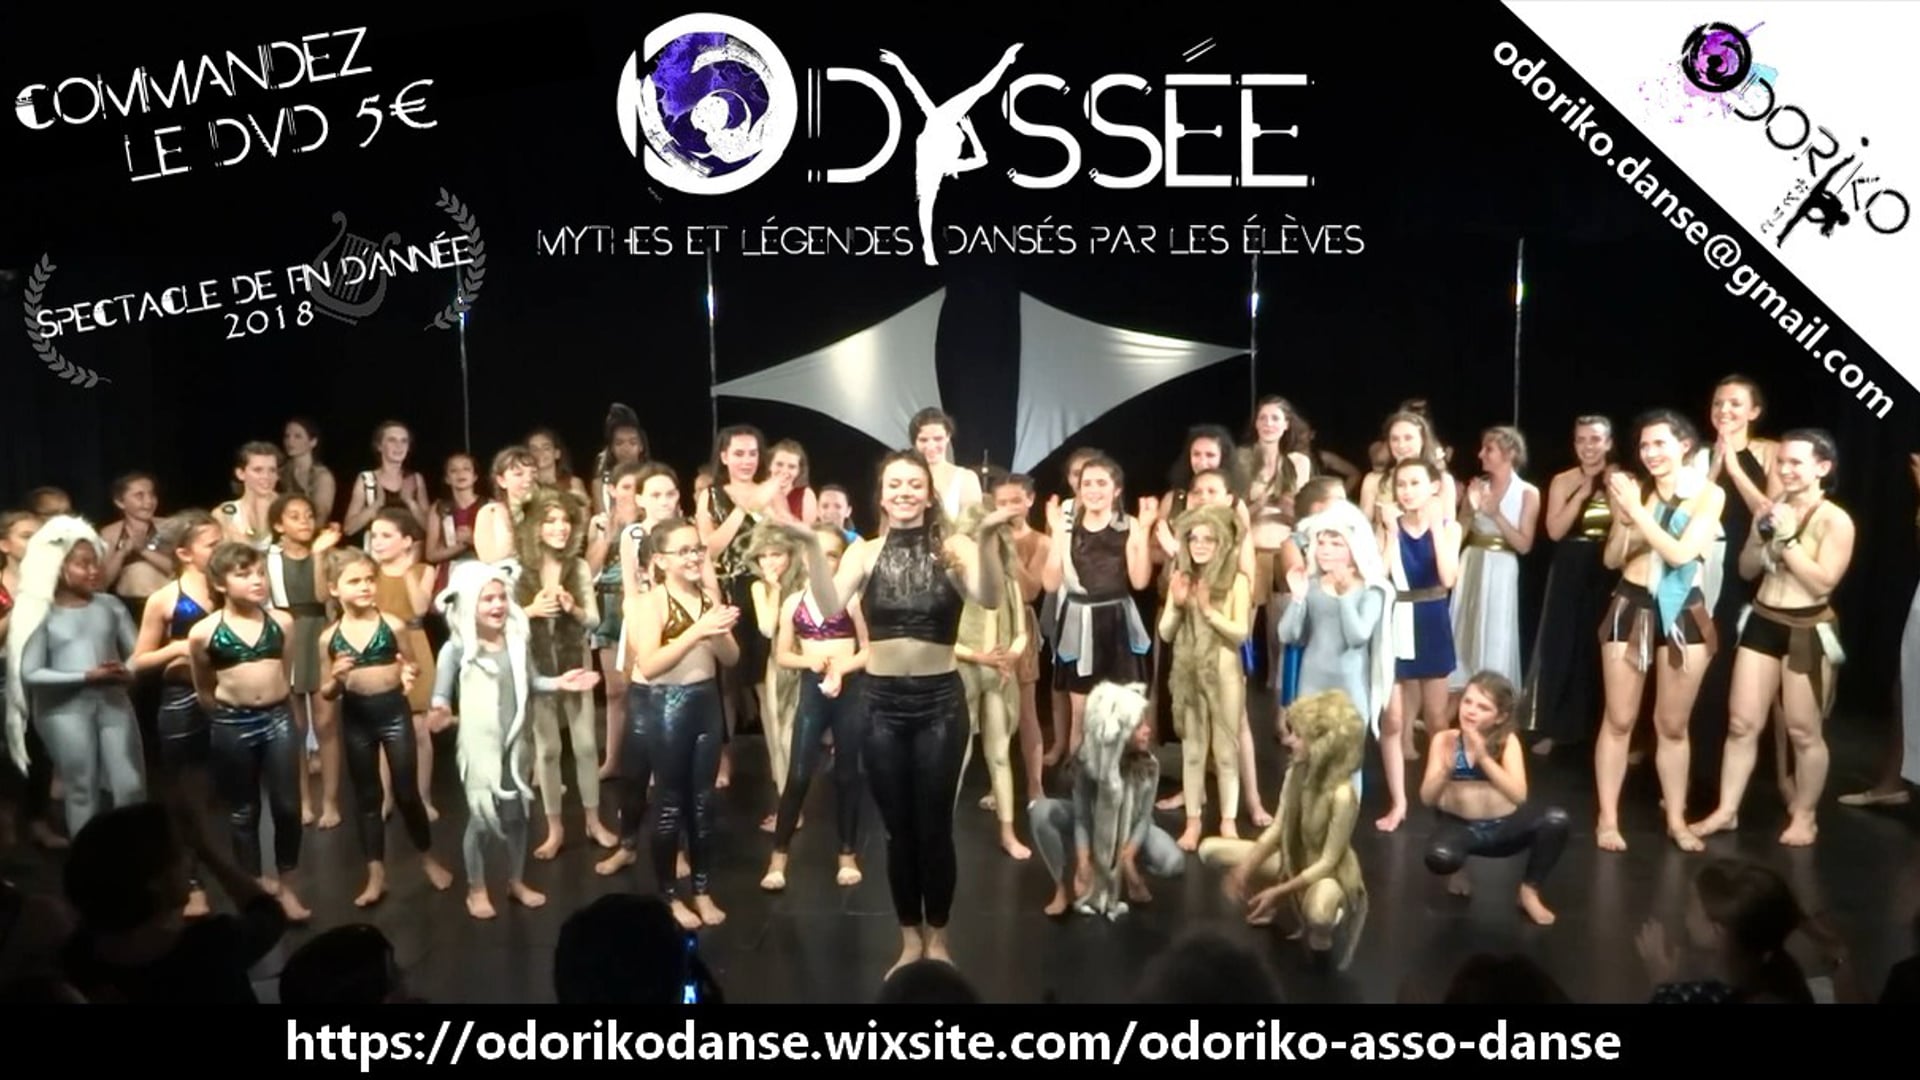 "ODYSSEE" - Spectacle de fin d'année 2018